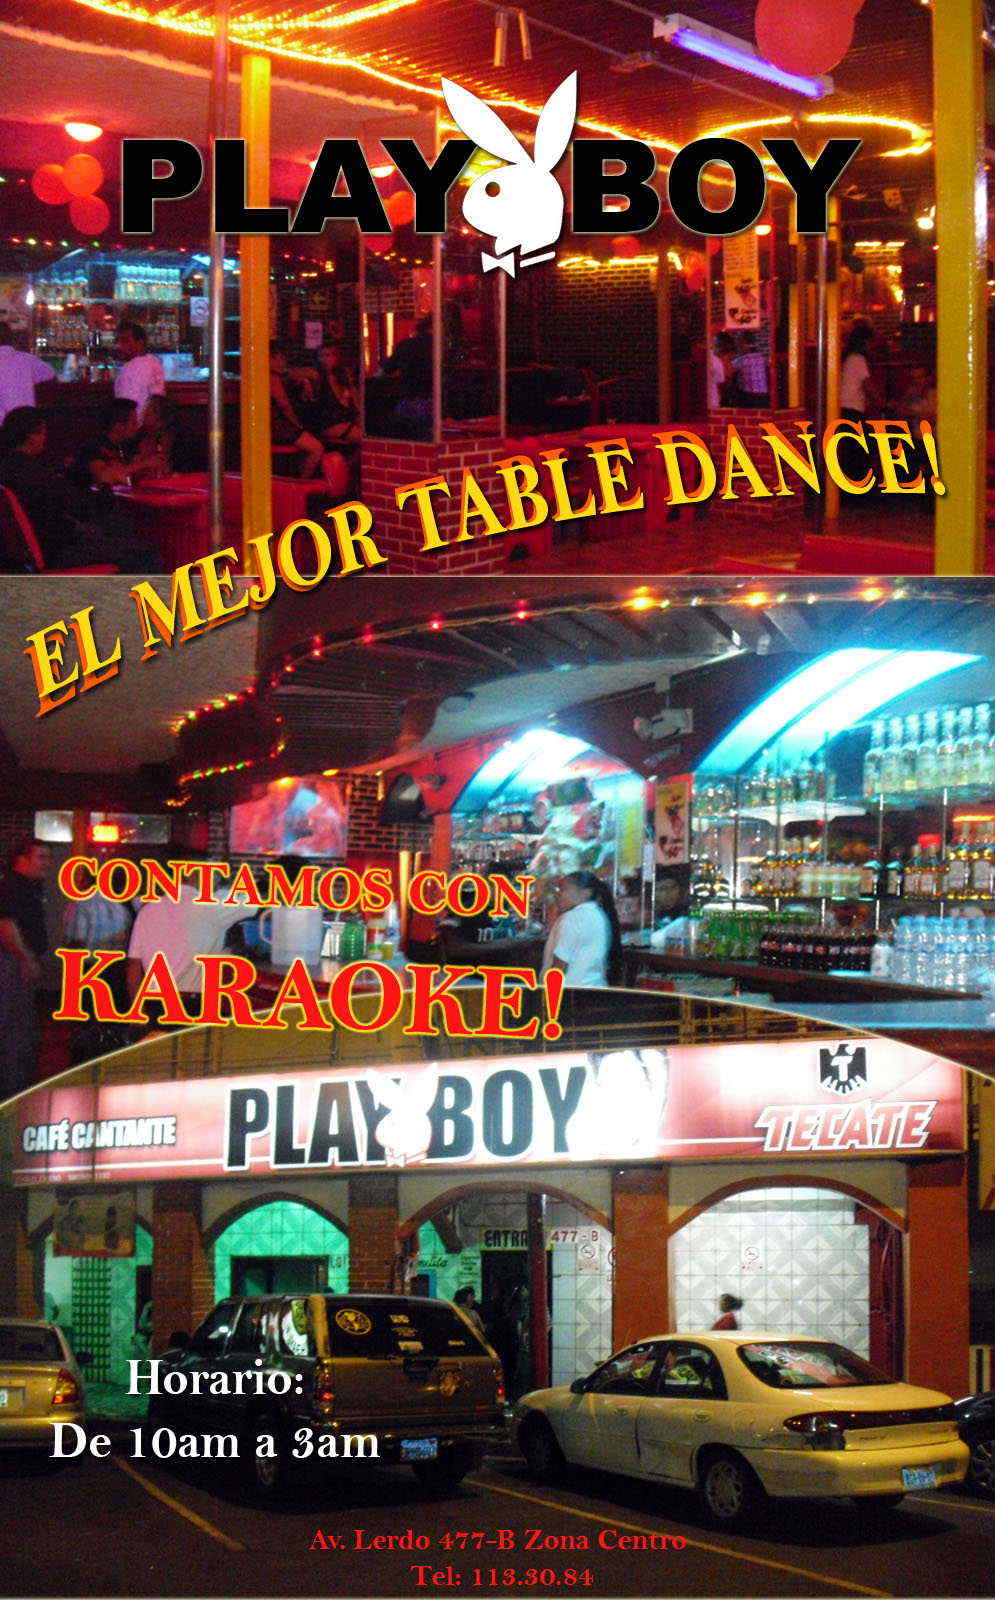 Play Boy-EL MEJOR TABLE DANCE Y CONTAMOS CON KARAOKE...   